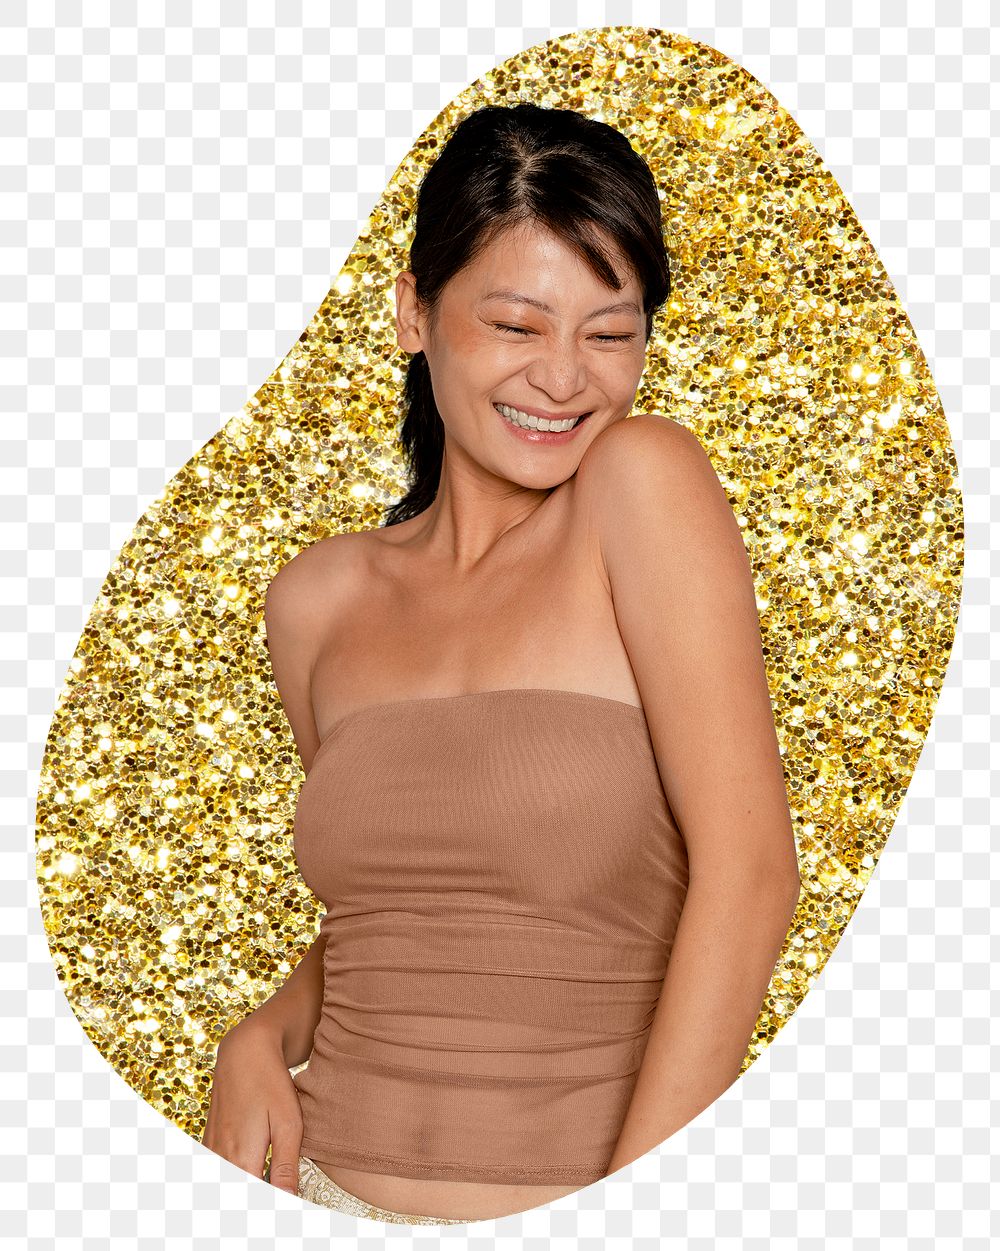 Joyful woman png sticker, gold glitter blob shape, transparent background